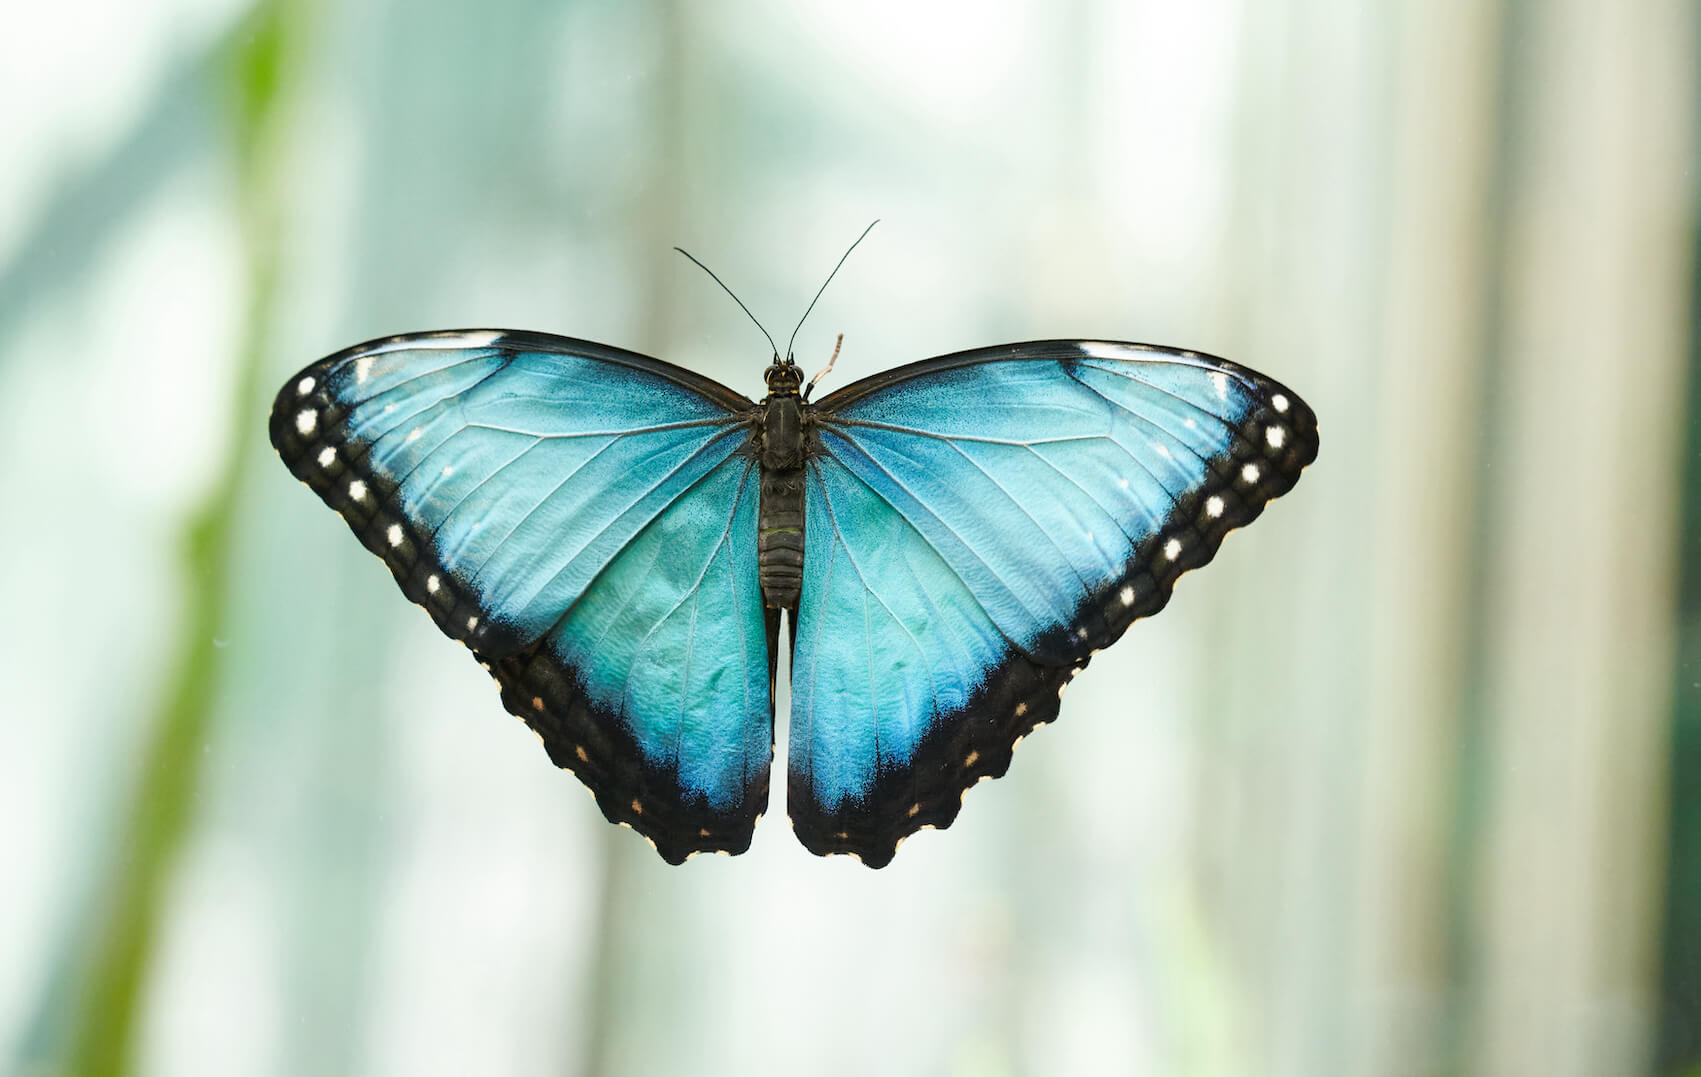 Ein hellblauer Morphofalter, der seine Flügel ausgebreitet hat, sitzt auf einer Glasscheibe. An ihren Rändern sind die Flügel schwarz und haben weiße Punkte. Der Körper des Schmetterlings ist schwarz.